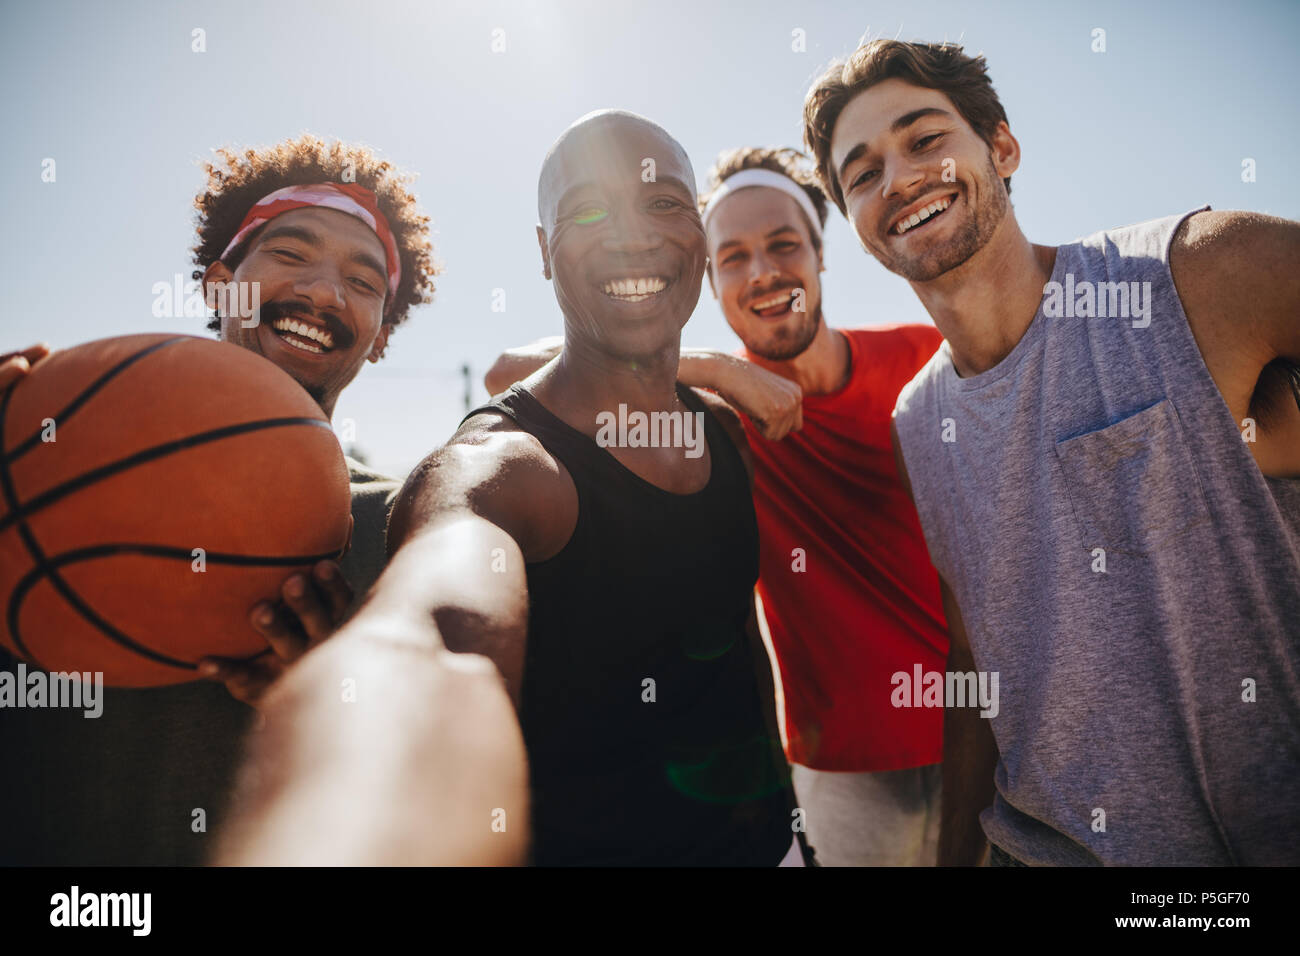 Vier Männer für selfie Holding ein Basketball posieren. Lächelnd Athleten genießen, während Basketball spielen. Stockfoto